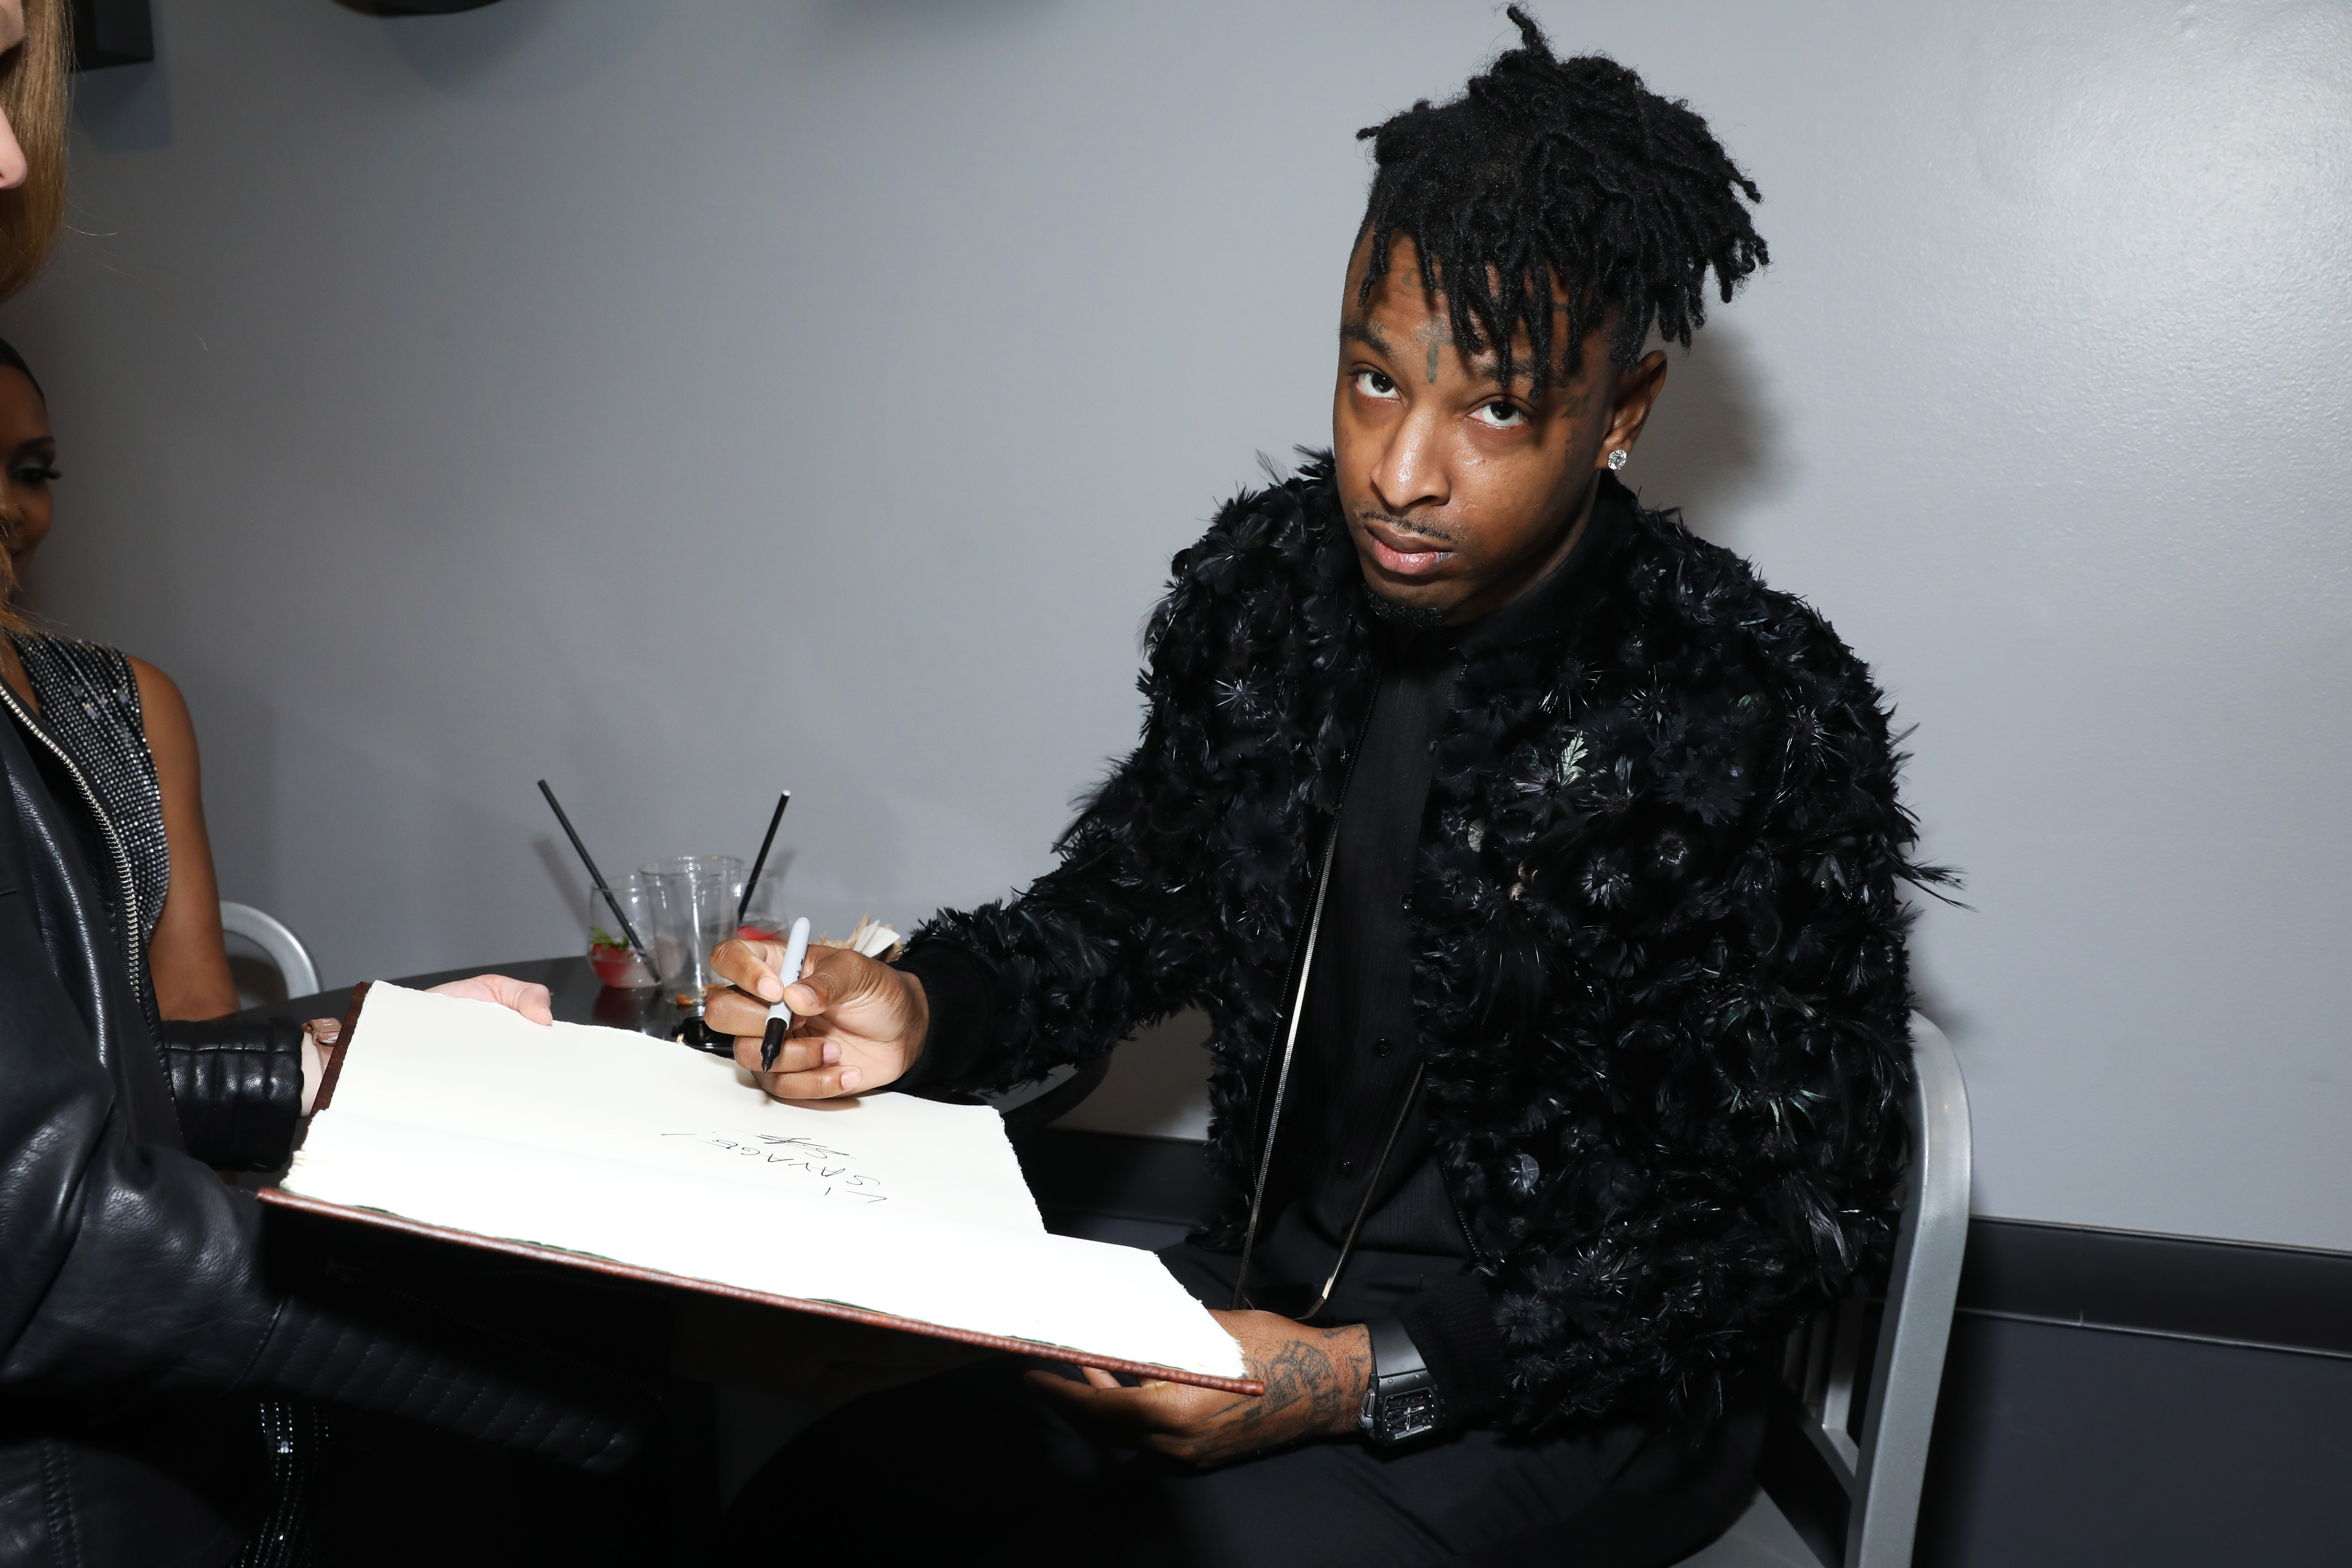 In open letter, 21 Savage asks “OG rappers” to stop judging modern hip-hop